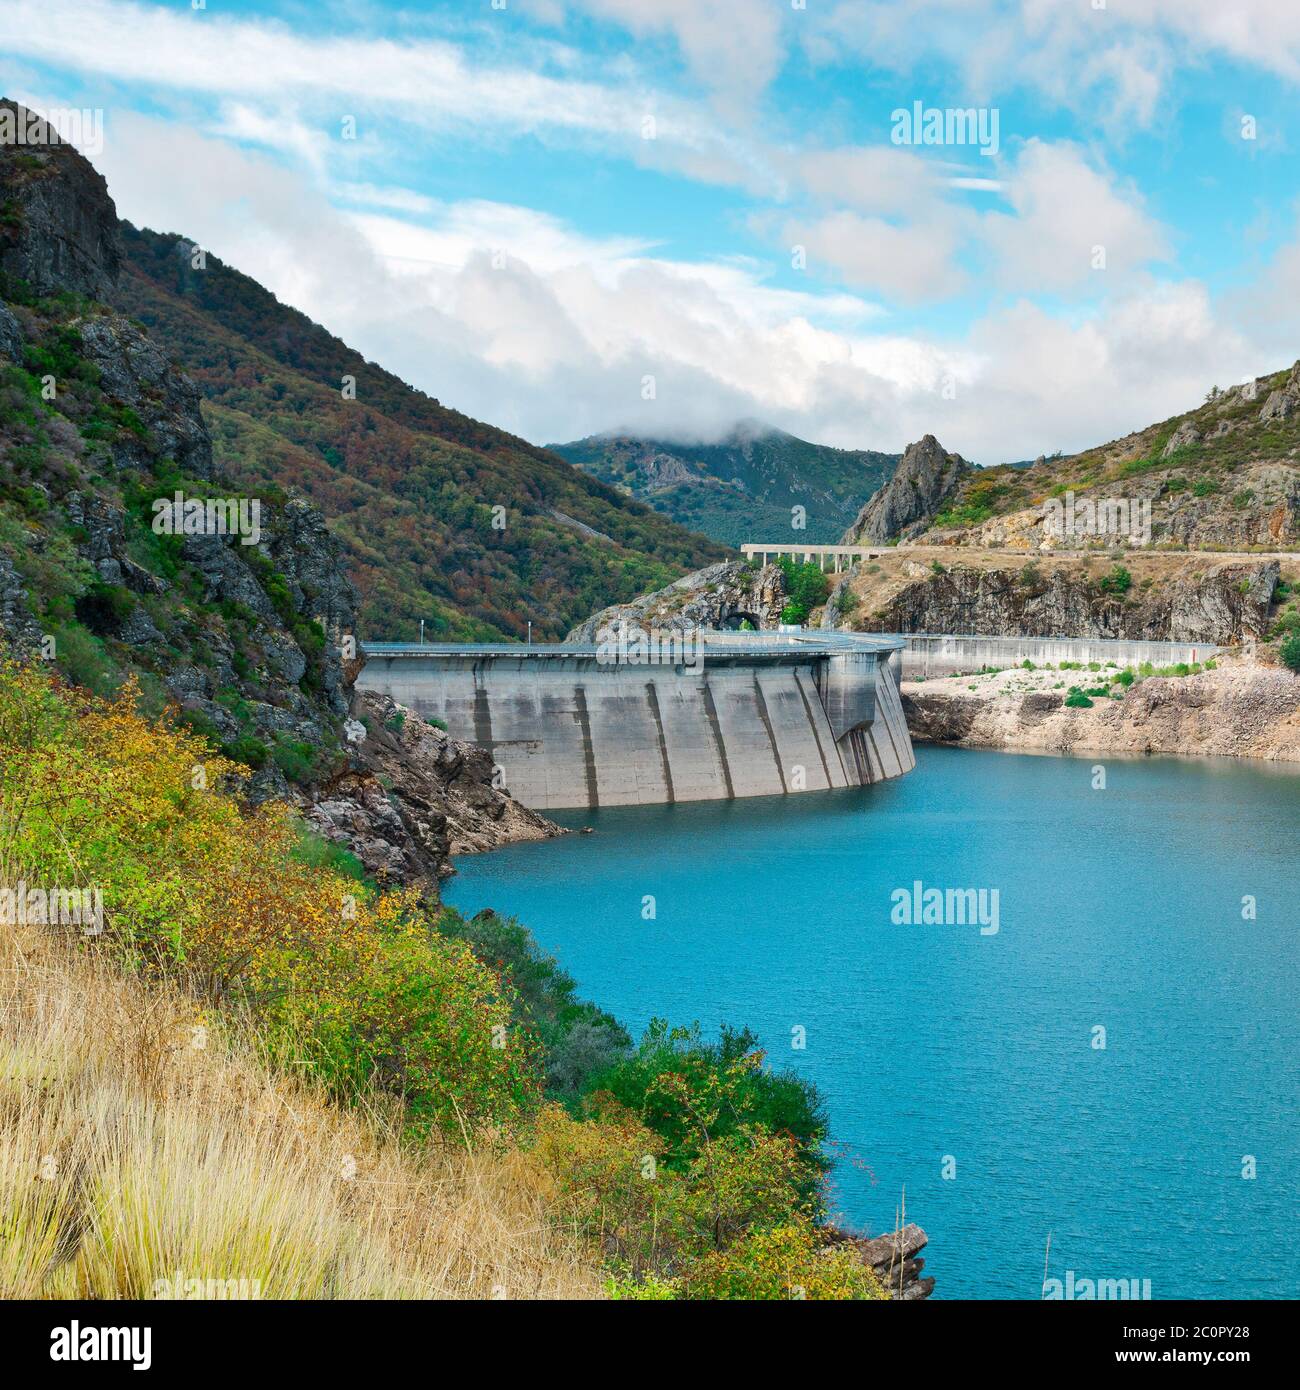 Dam in Spain Stock Photo